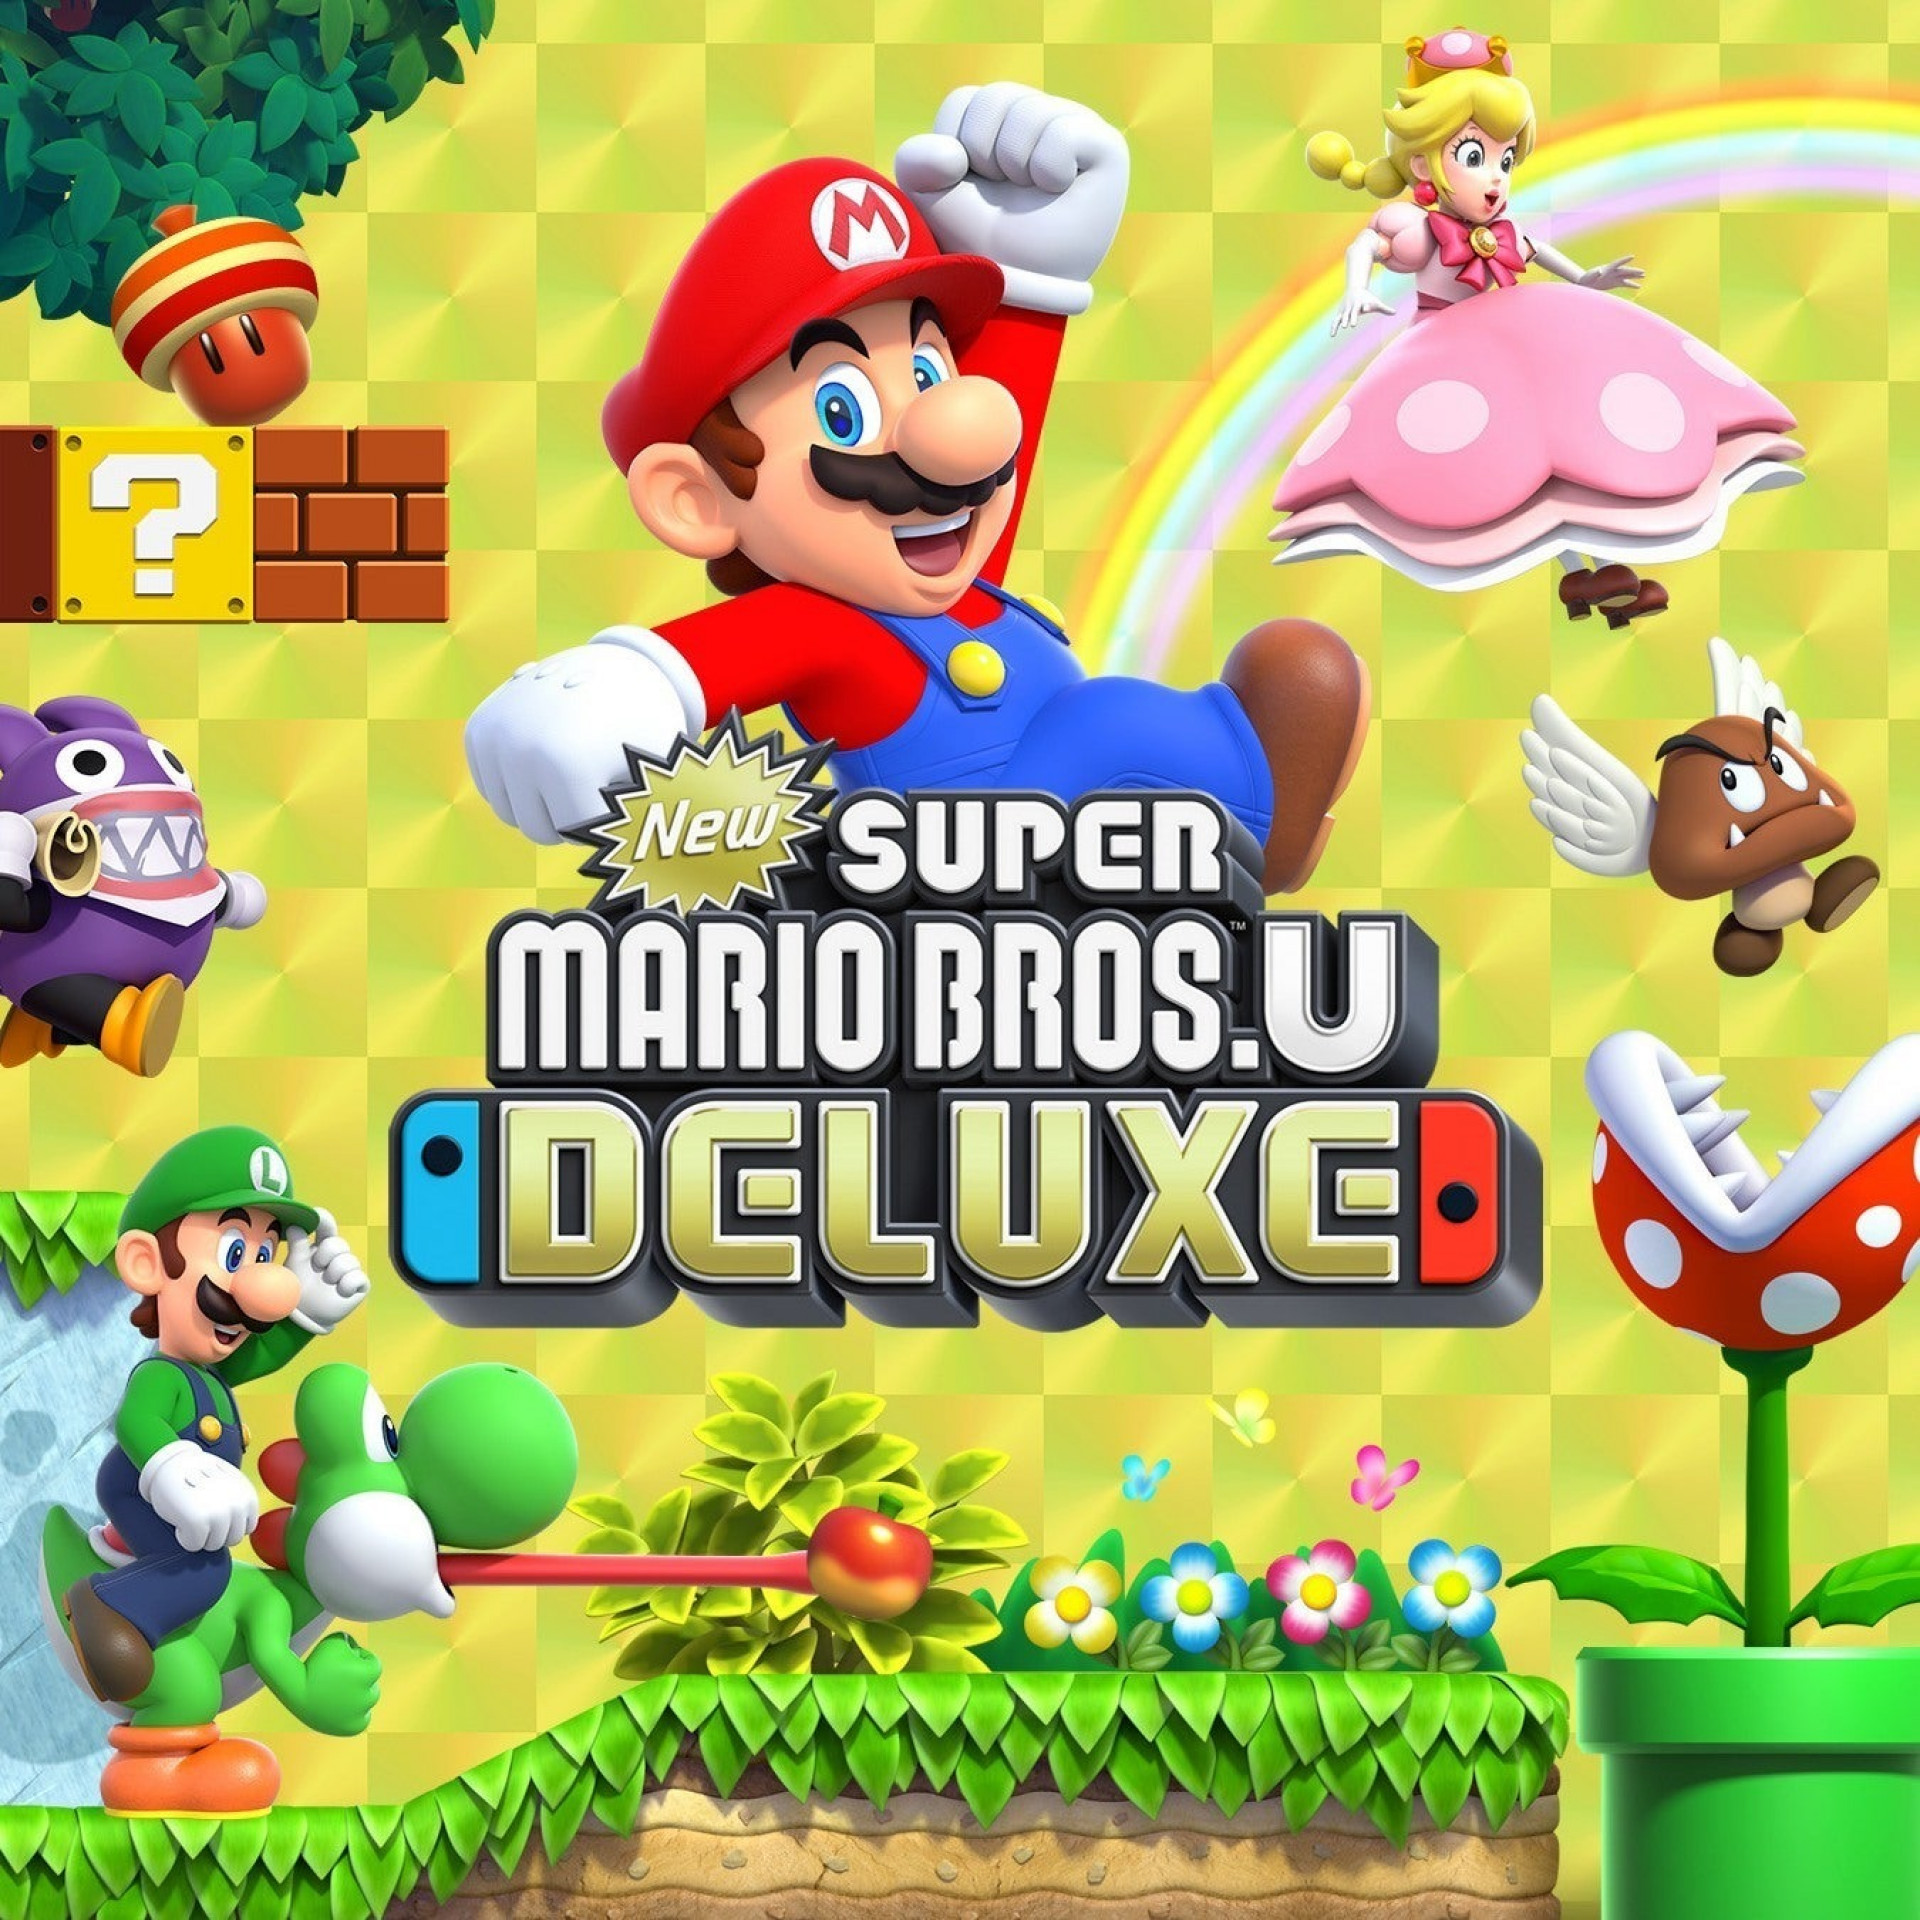 Mario deluxe nintendo. New super Mario Bros. U Deluxe Switch. Super Mario Deluxe Nintendo Switch. Super Mario Bros Deluxe Nintendo Switch. Игра для Nintendo Switch New super Mario Bros. U Deluxe.